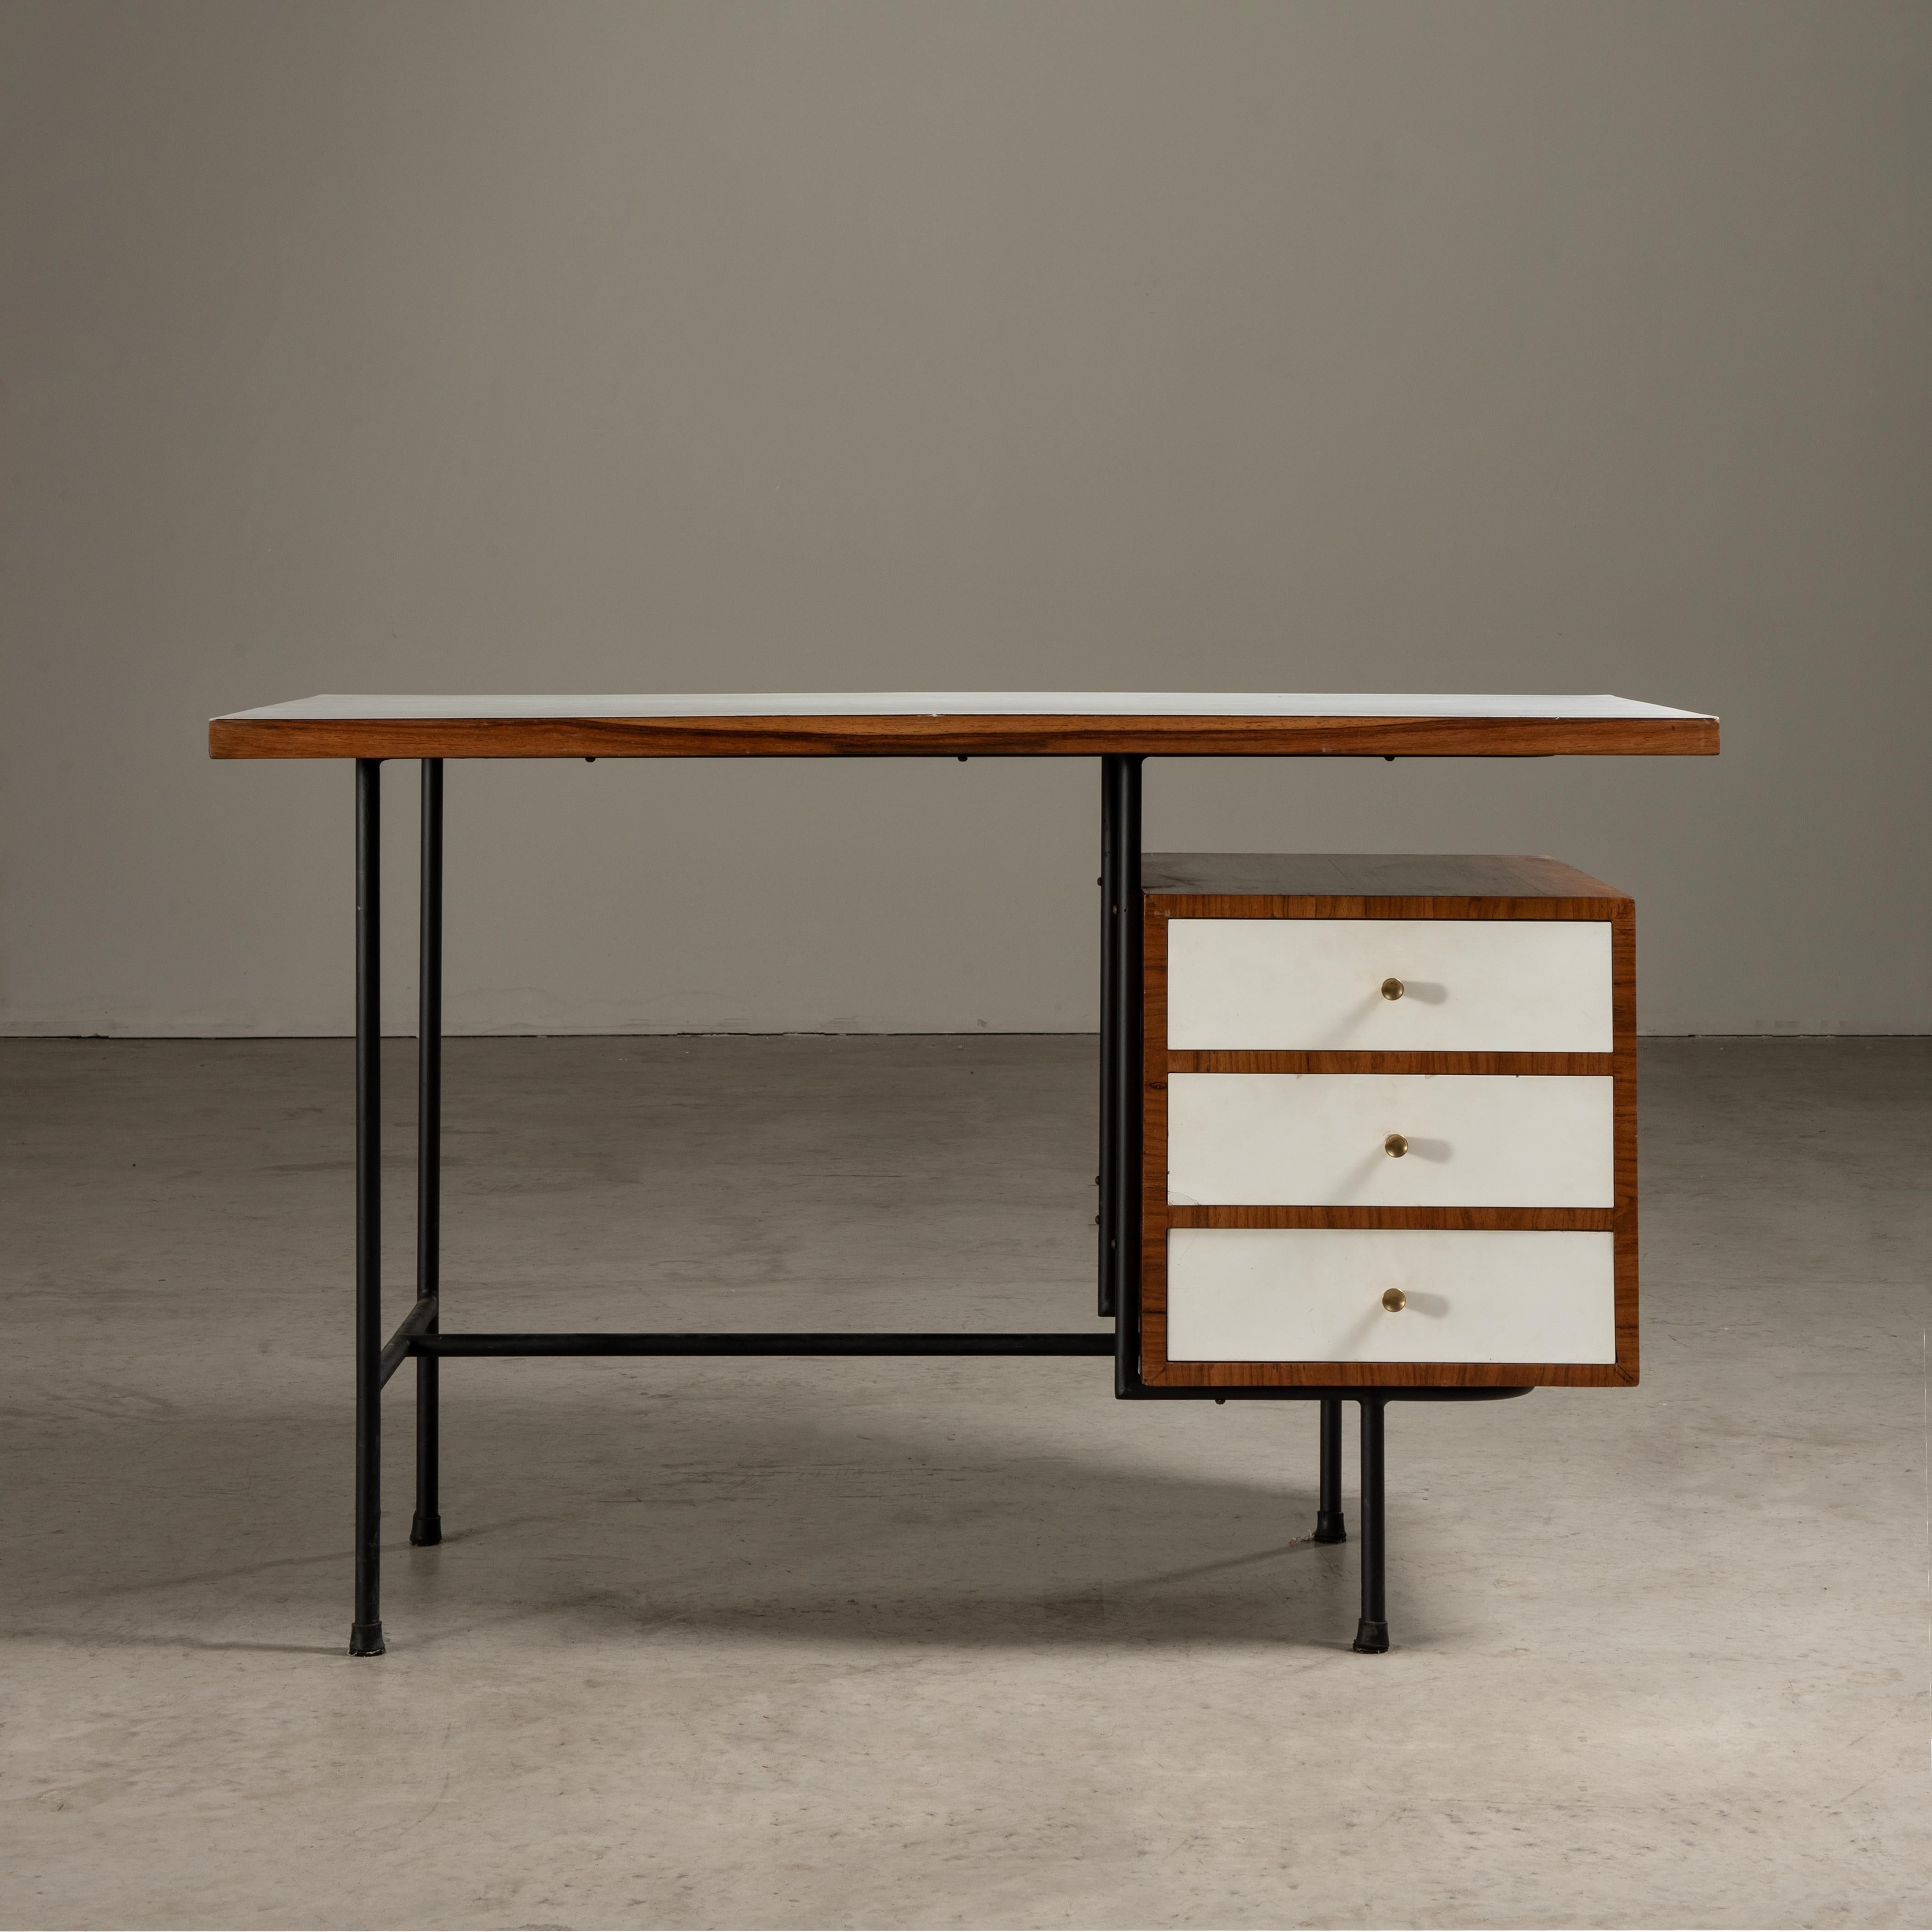 Unilabor war ein bedeutender brasilianischer Möbelhersteller in der Mitte des 20. Jahrhunderts, der vor allem für sein modernistisches Design und sein soziales Geschäftsmodell bekannt war. Das 1954 von Geraldo de Barros in São Paulo gegründete